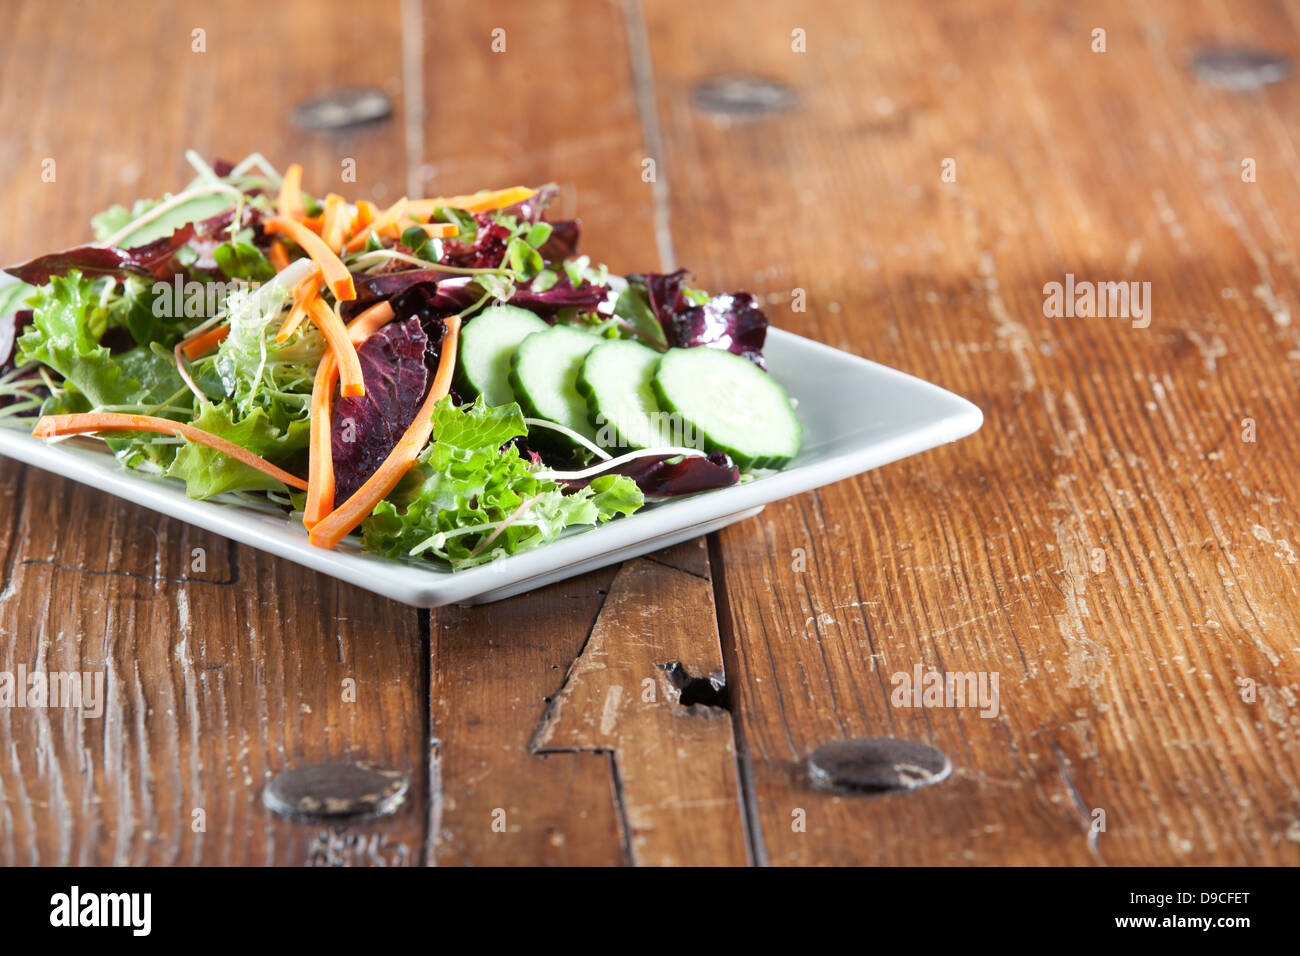 Quadratische weiße Schüssel mit bunten frisch und Bio-Rucola-Salat garniert mit einem Sortiment von knackigem Gemüse. Stockfoto